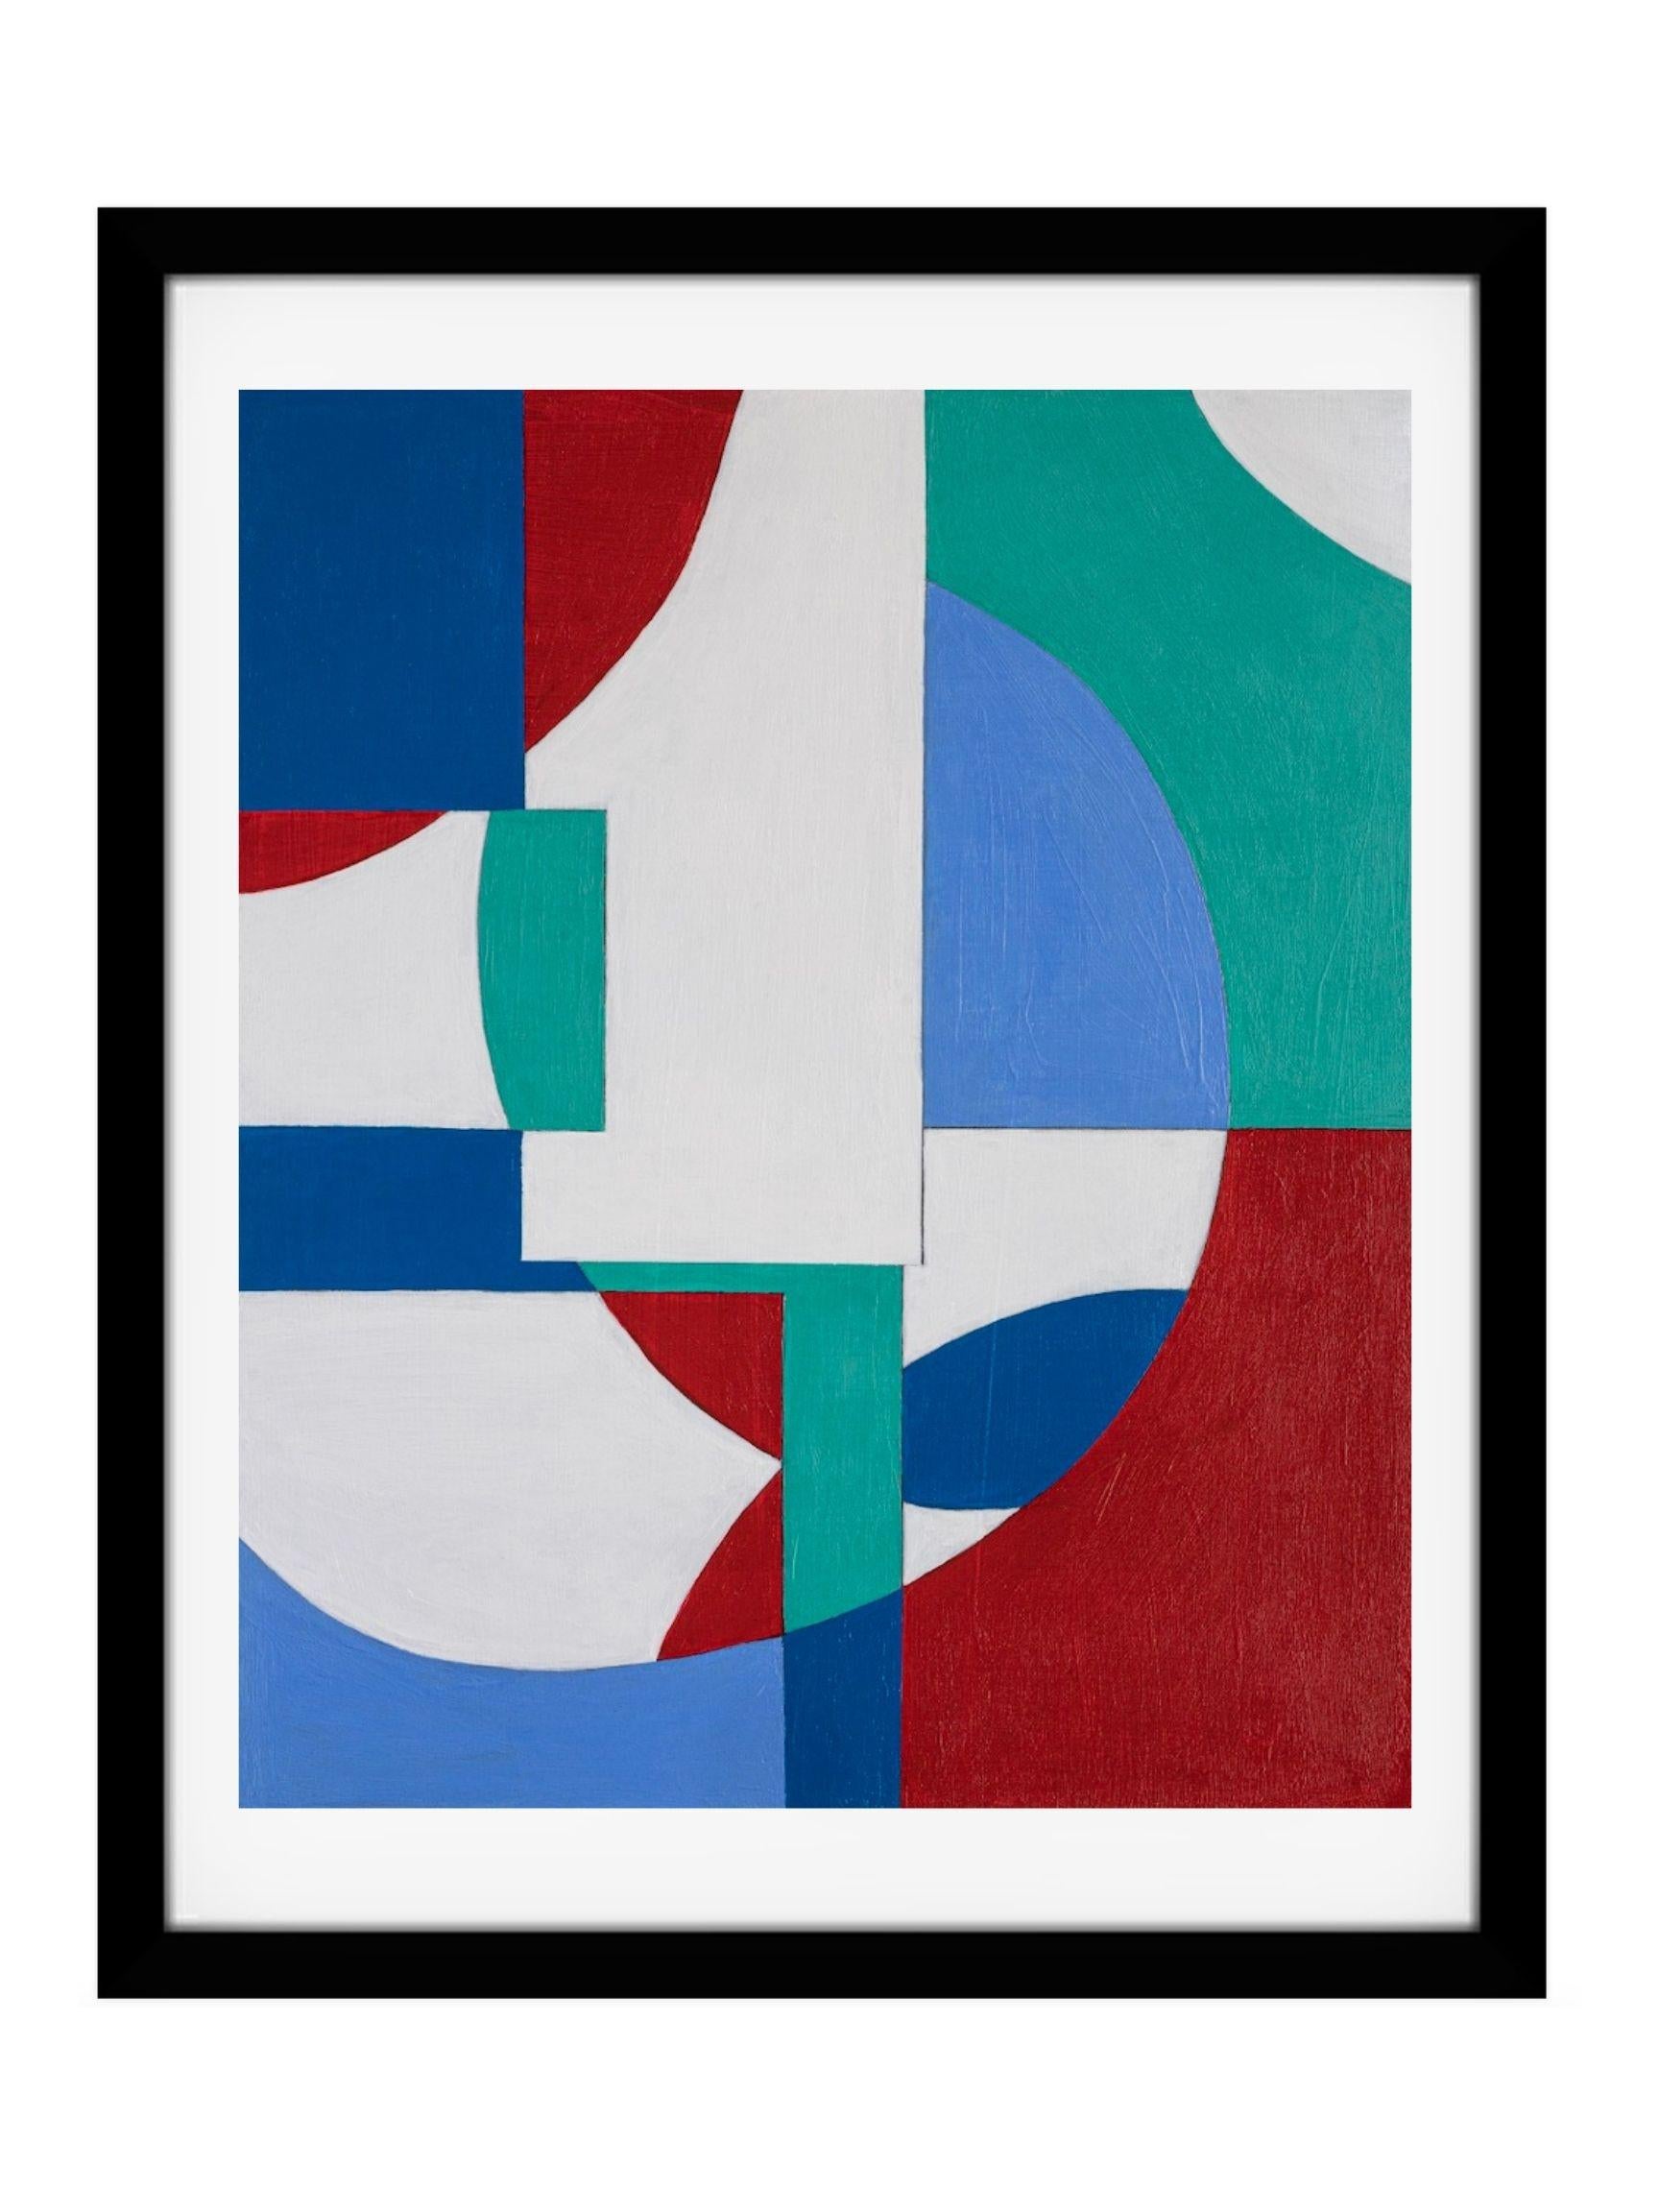 GA1220 Limited edition giclee geometric abstraction signed print - Abstract Geometric Print by Zach Touchon